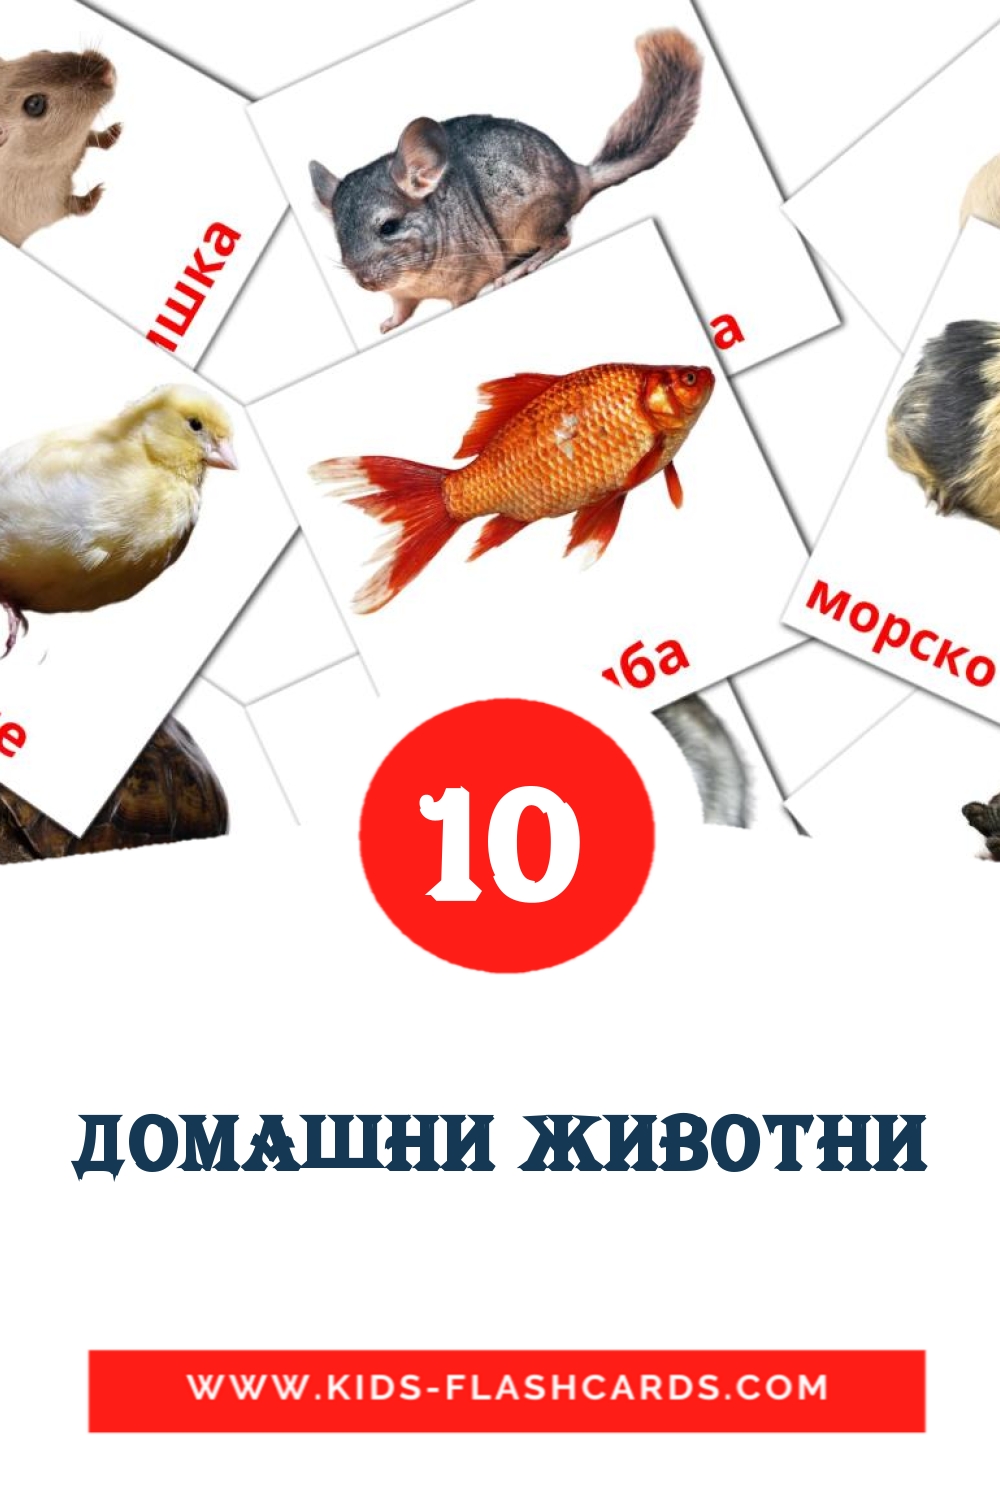 10 Cartões com Imagens de Домашни животни para Jardim de Infância em bashkir